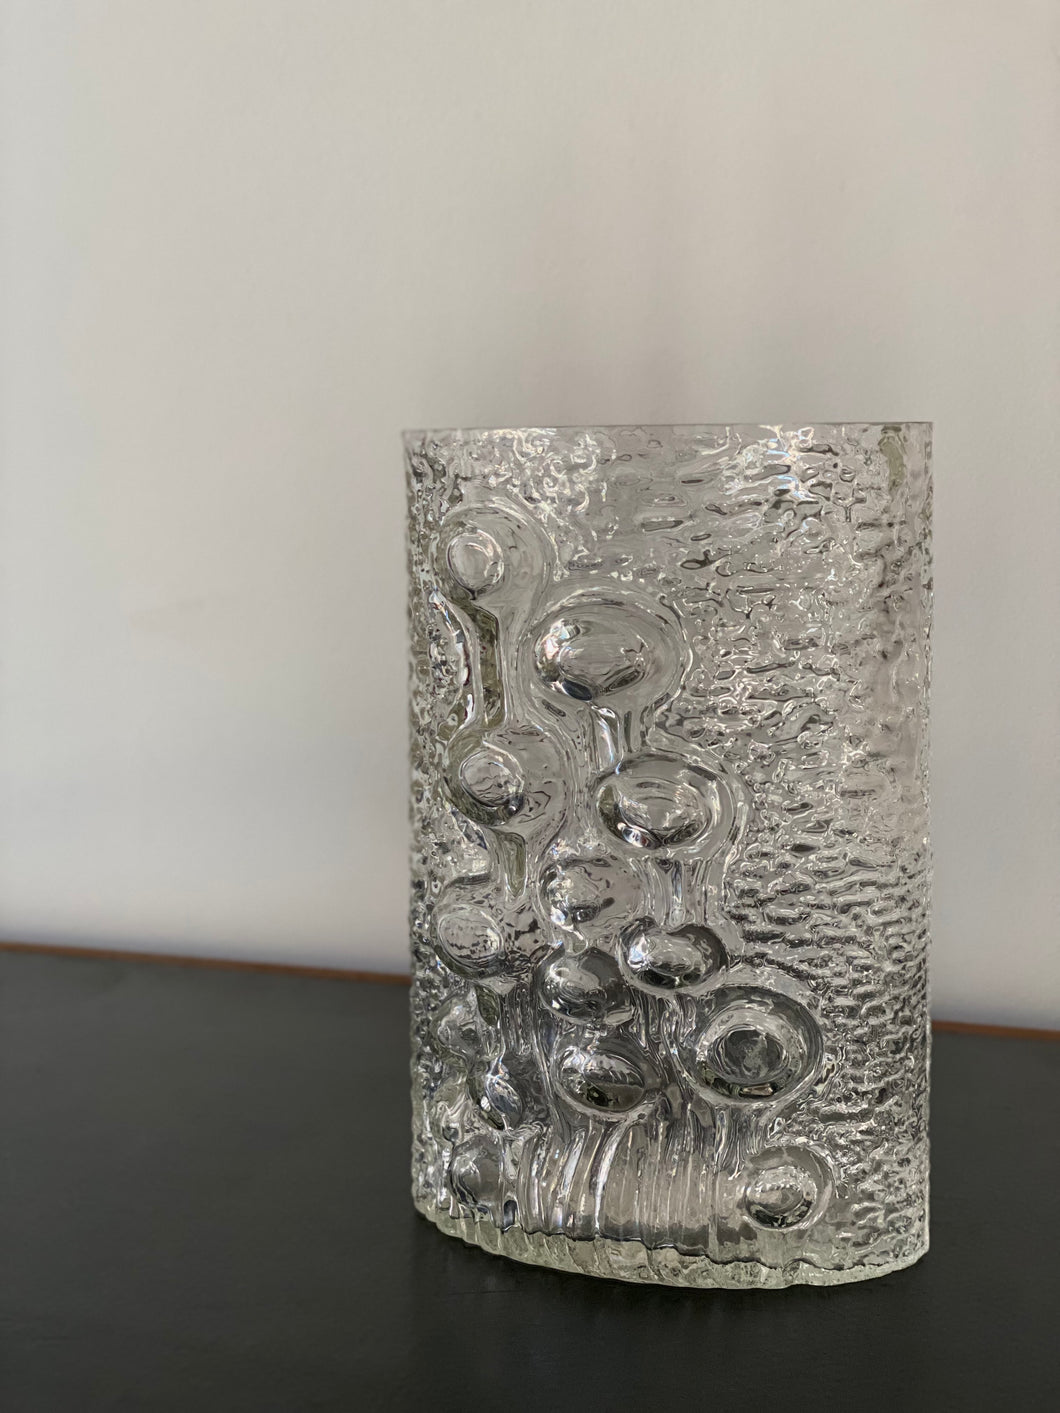 Crystal vase by Oiva Toikka by Iittala